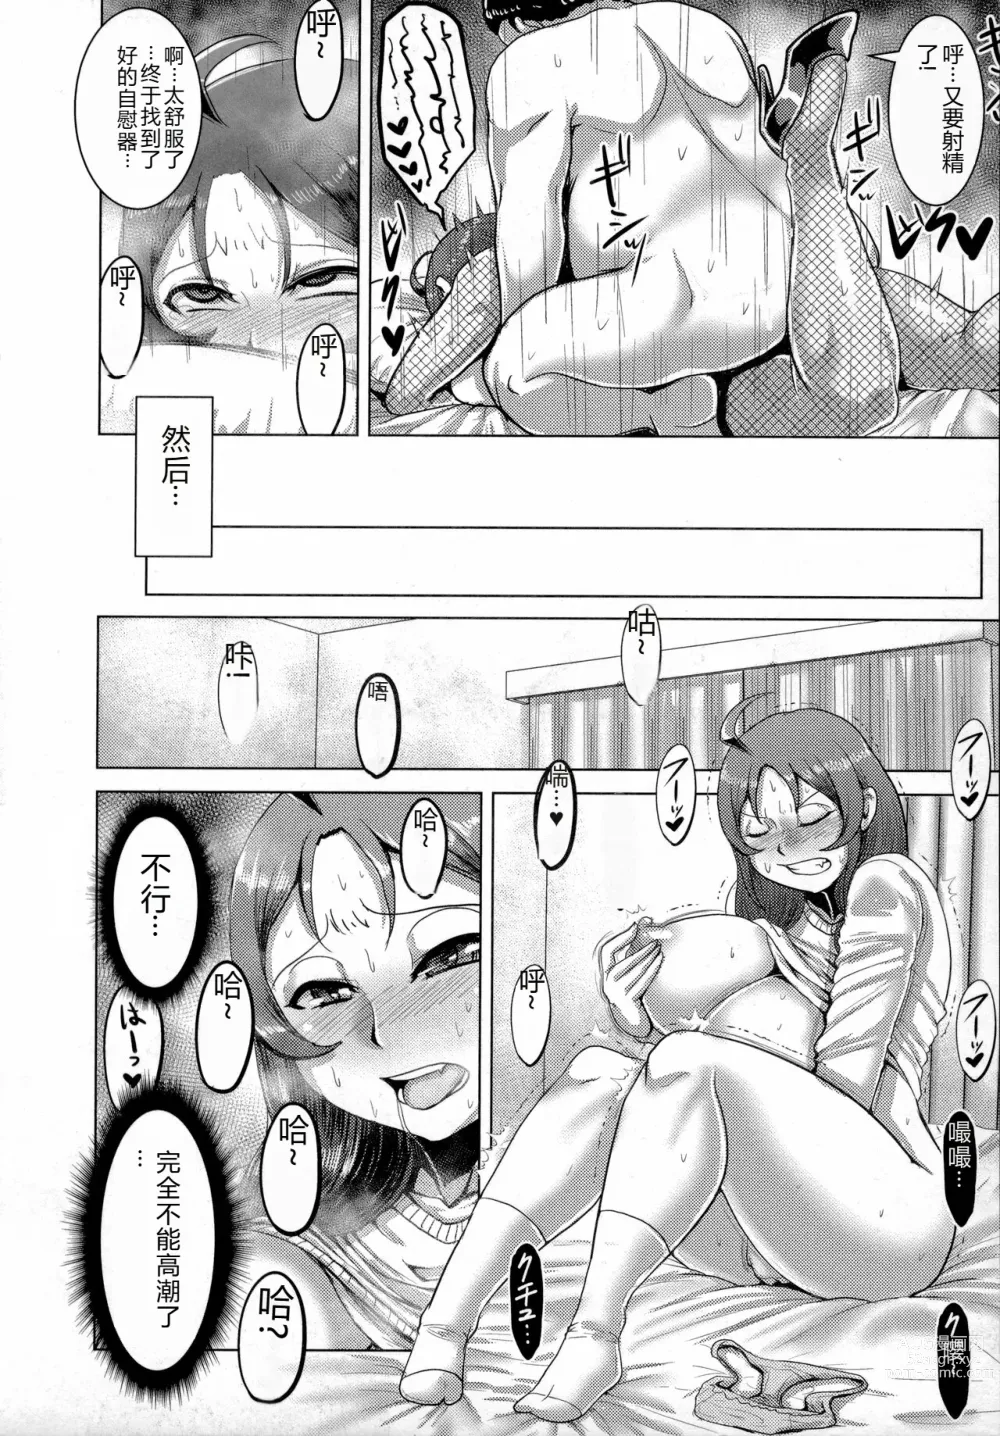 Page 15 of manga Chikujo no Tashinami